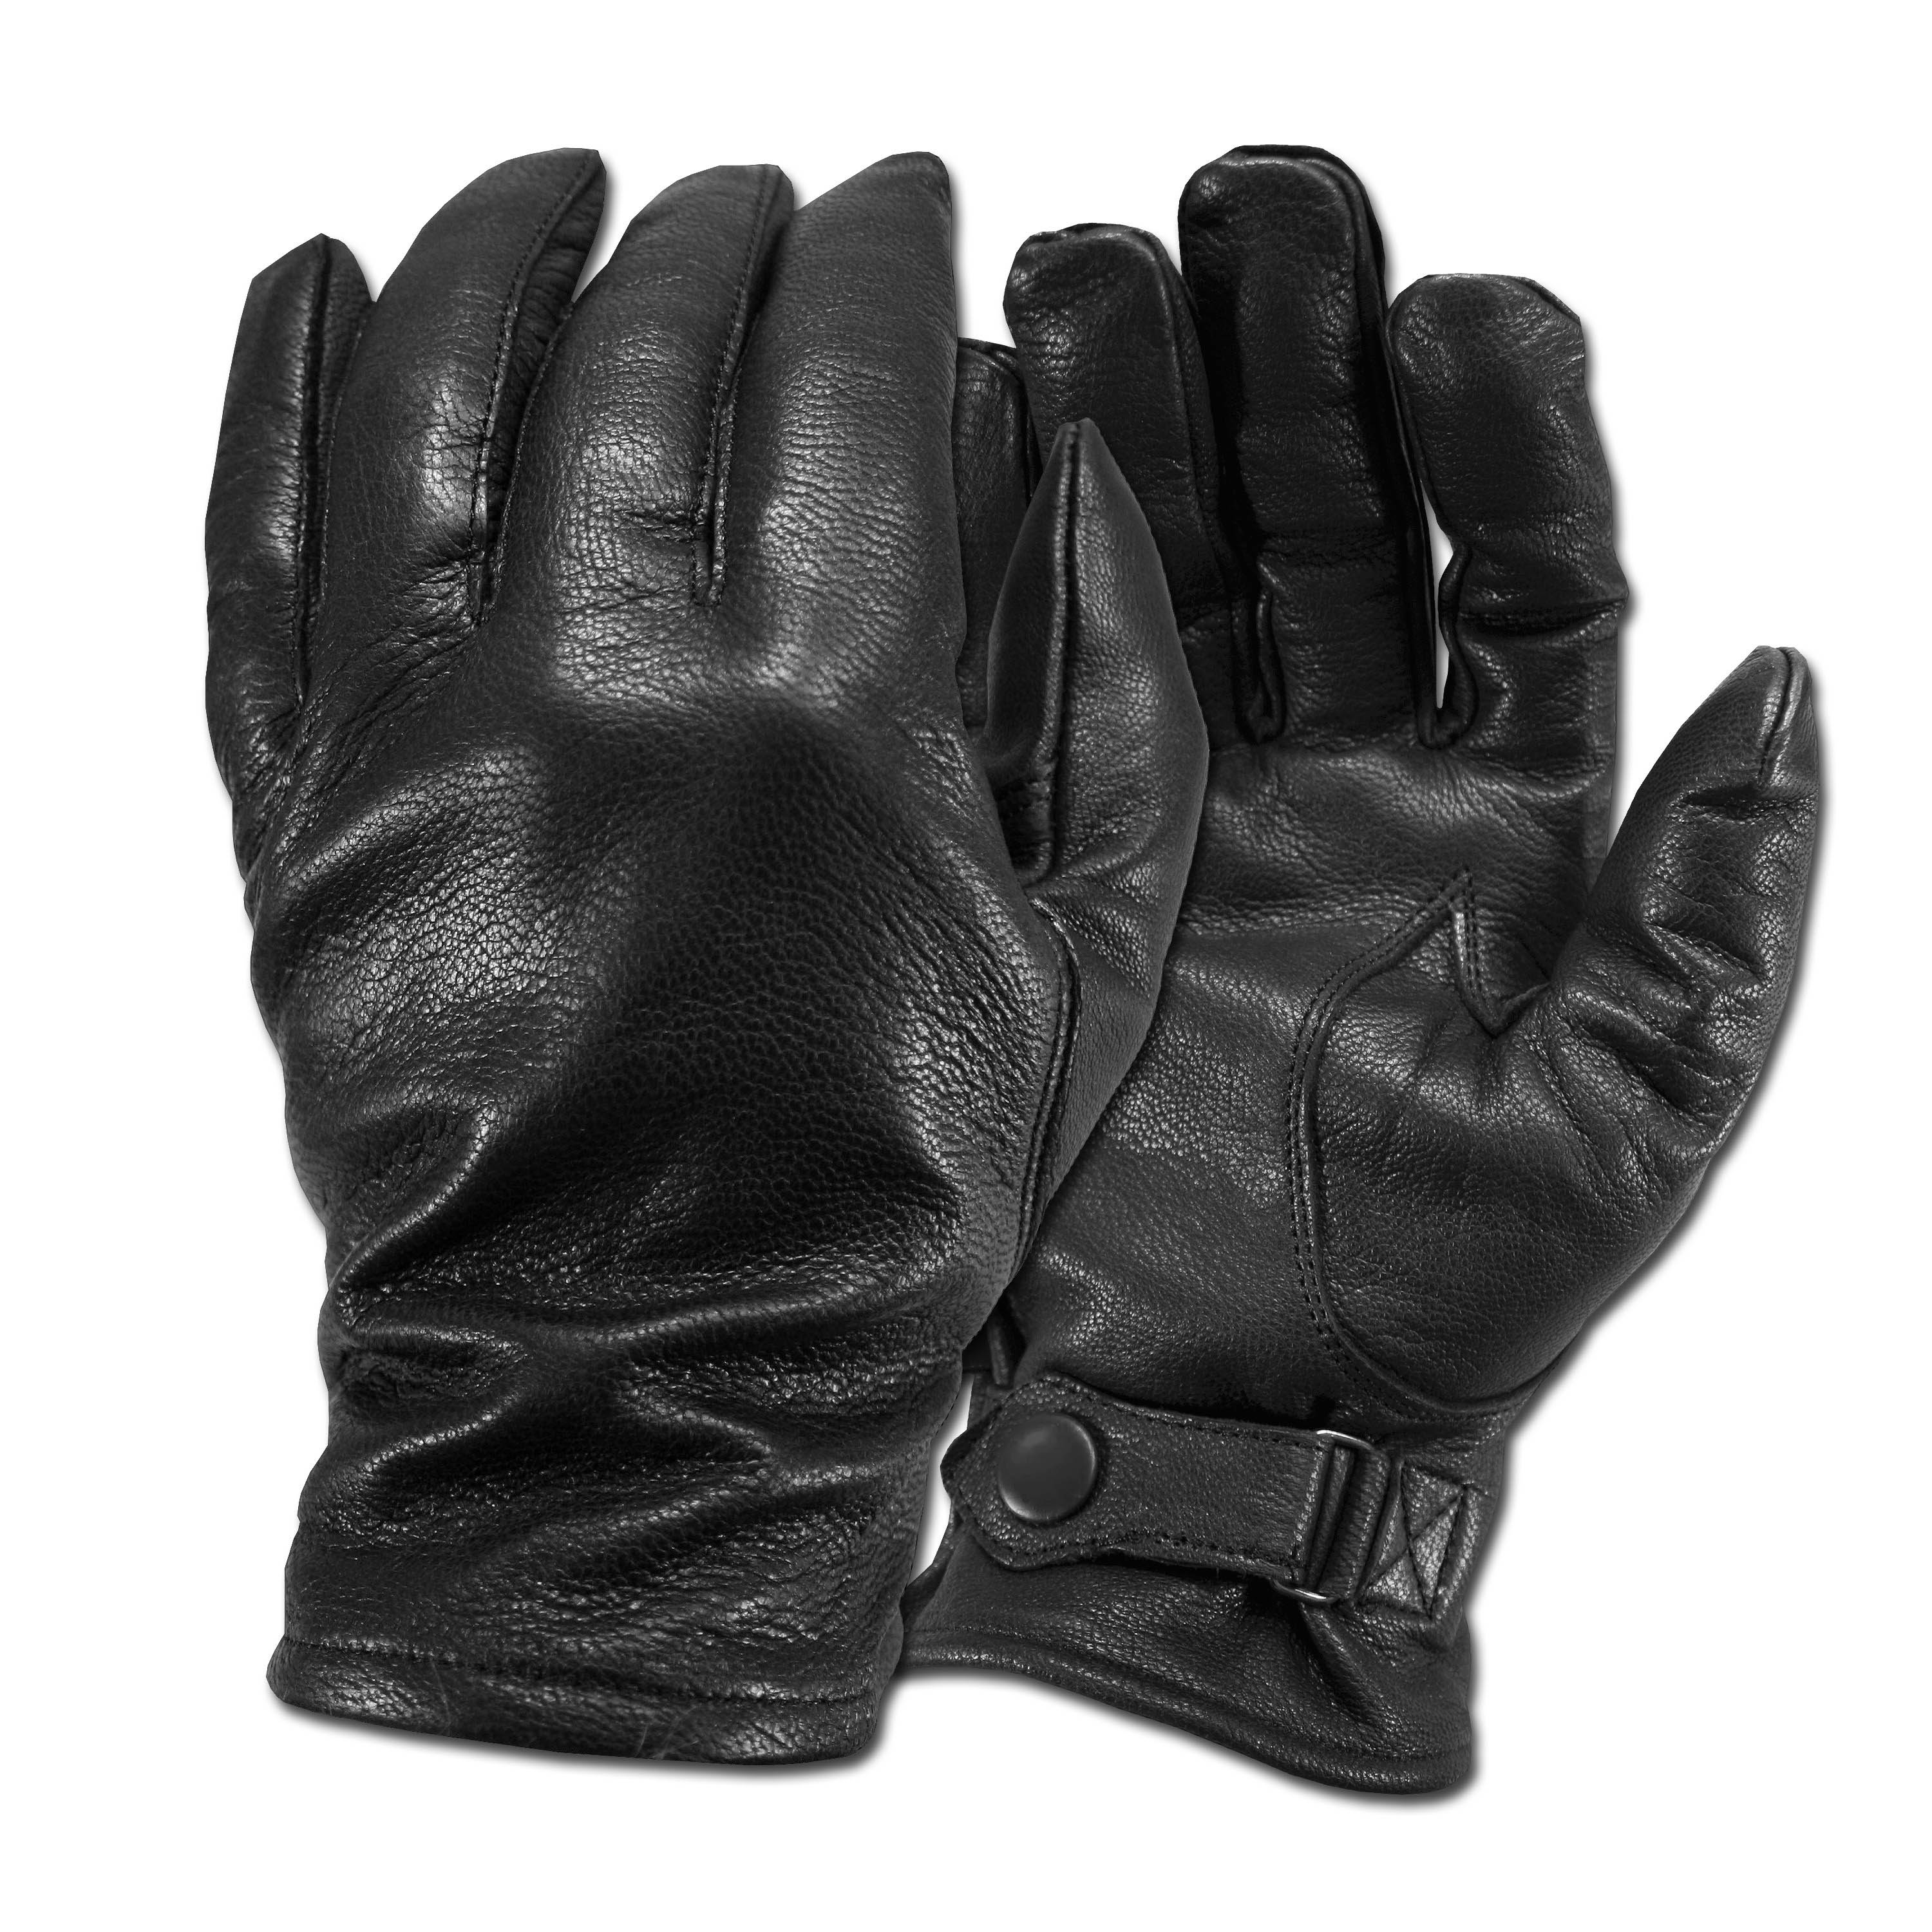 gris s-xxl Bw en cuir gants réplique Armée Gants Doublure Noir O 